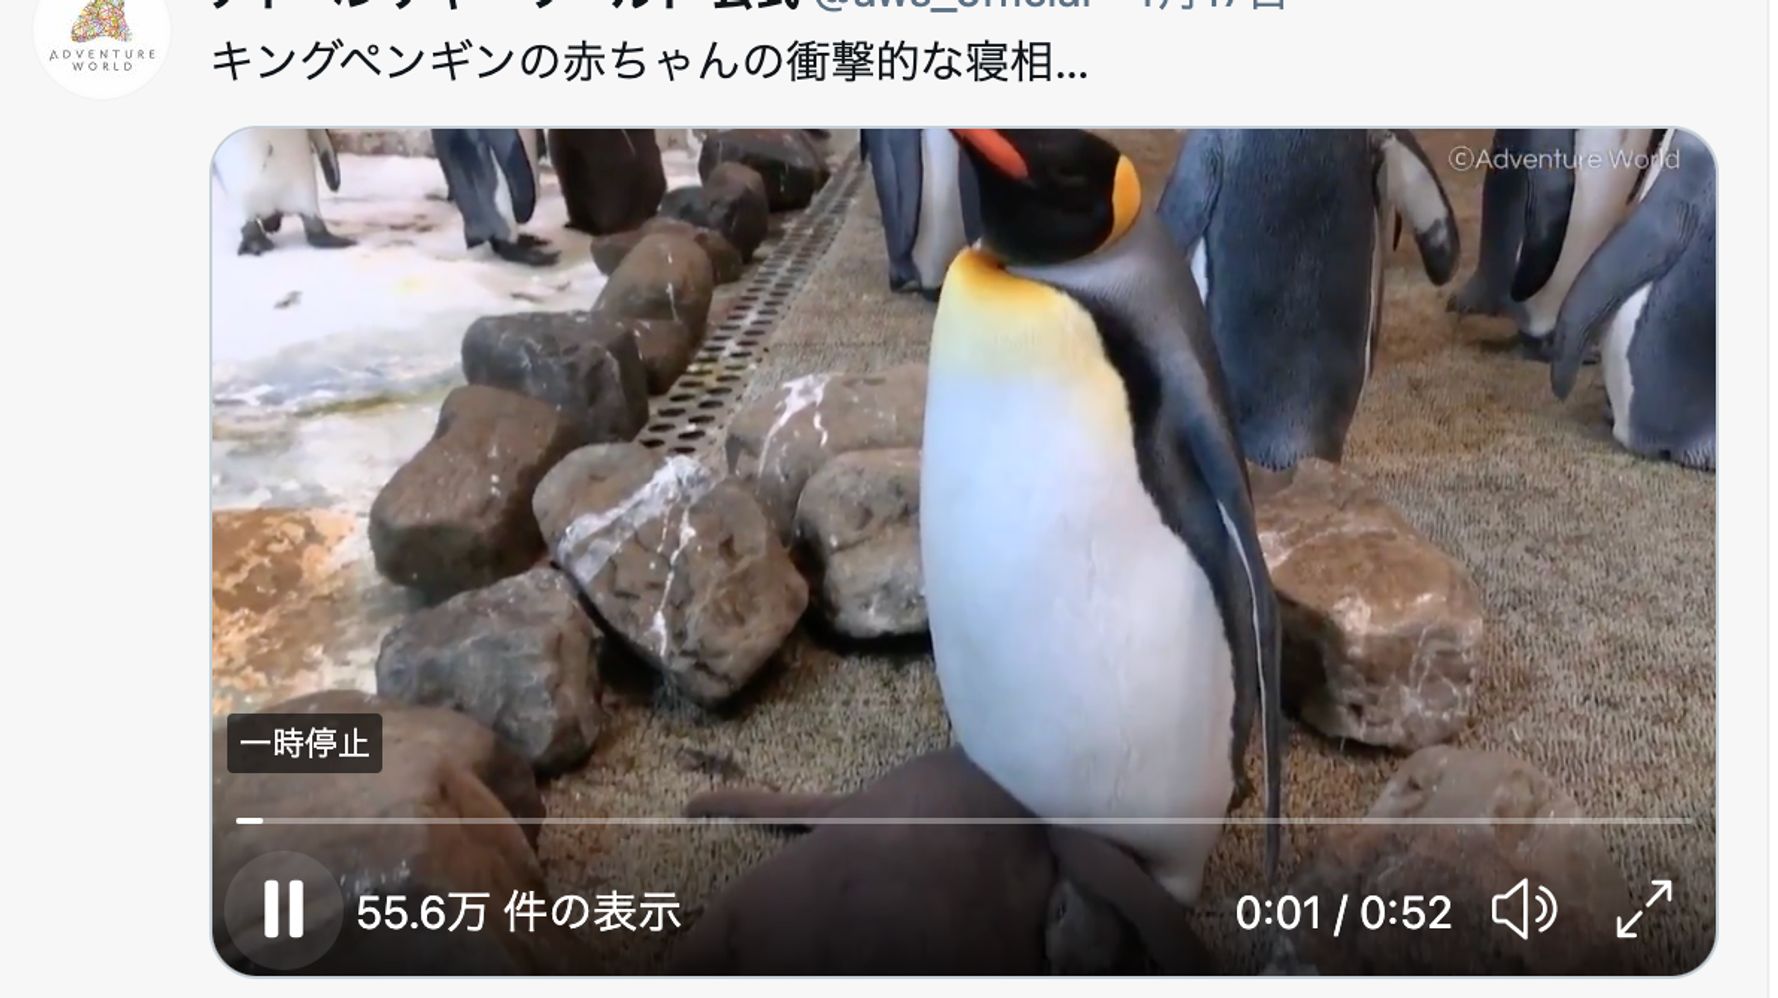 首 とれてない キングペンギンの赤ちゃんの寝相がホラーだった 動画 ハフポスト News